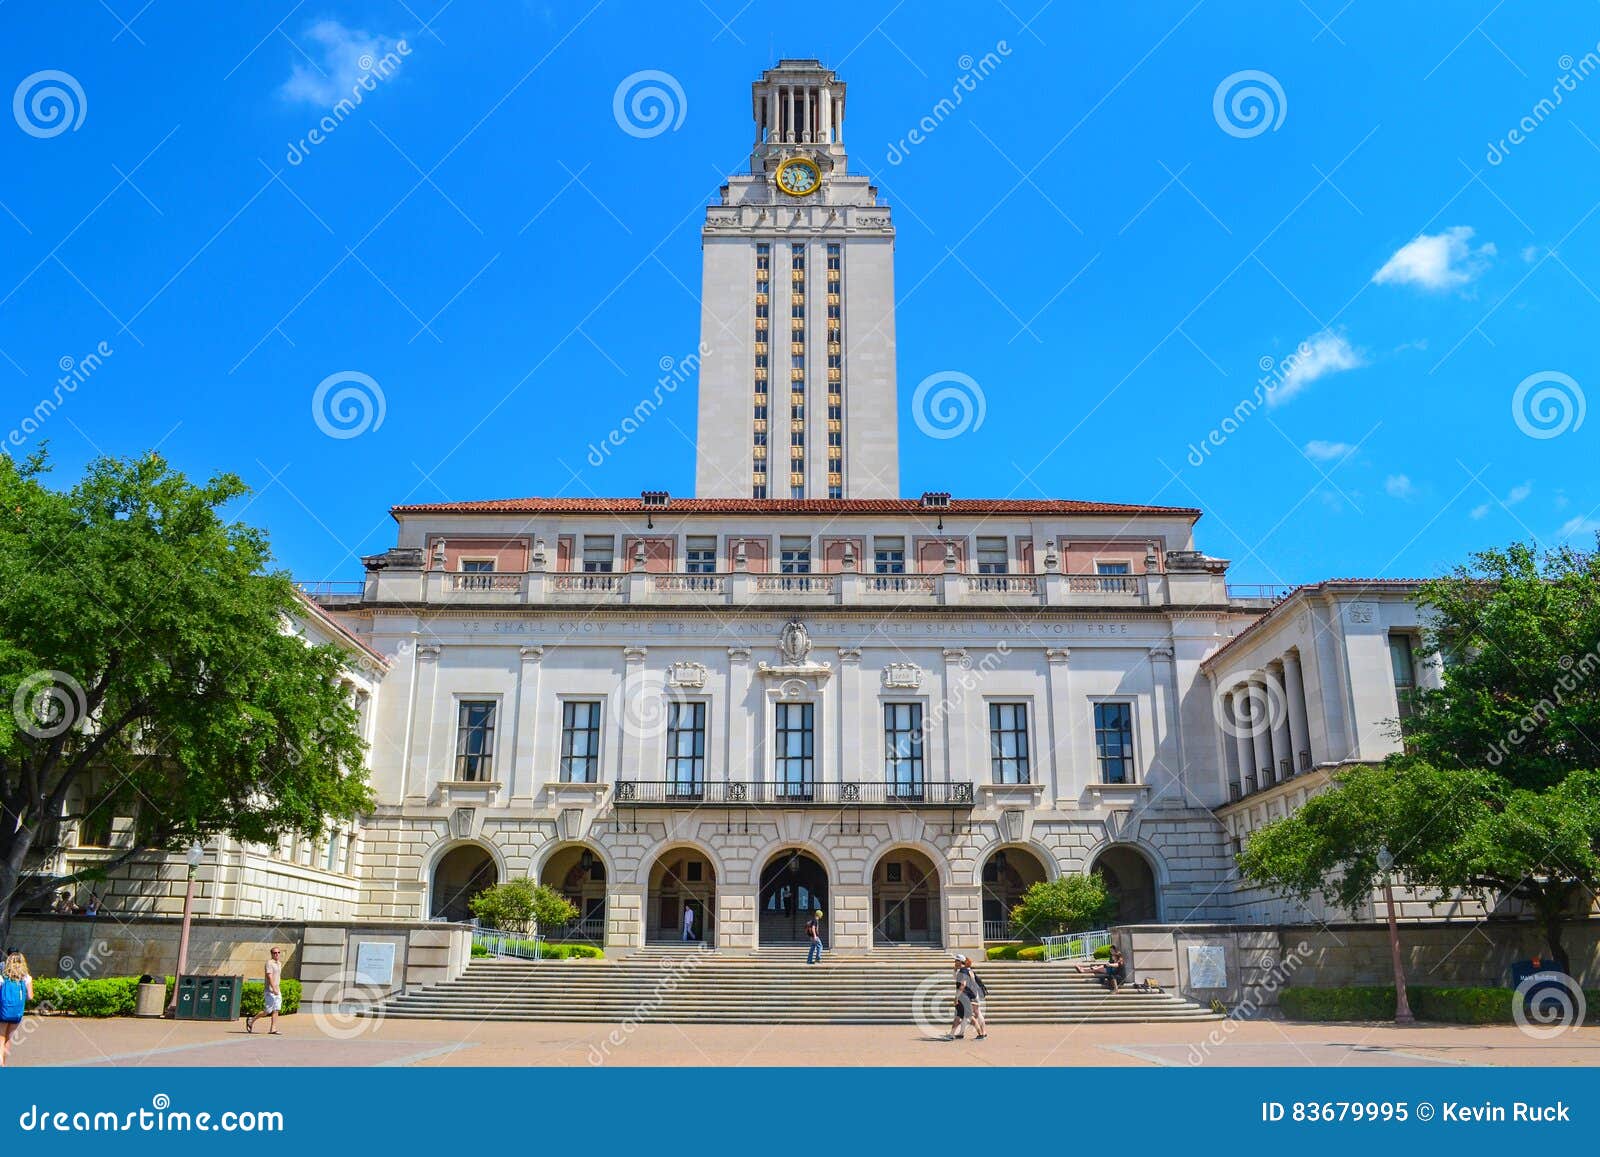 Ut Turm An Der Universitat Von Texas Austin College Campus Redaktionelles Bild Bild Von Kursteilnehmer Borduhr 83679995